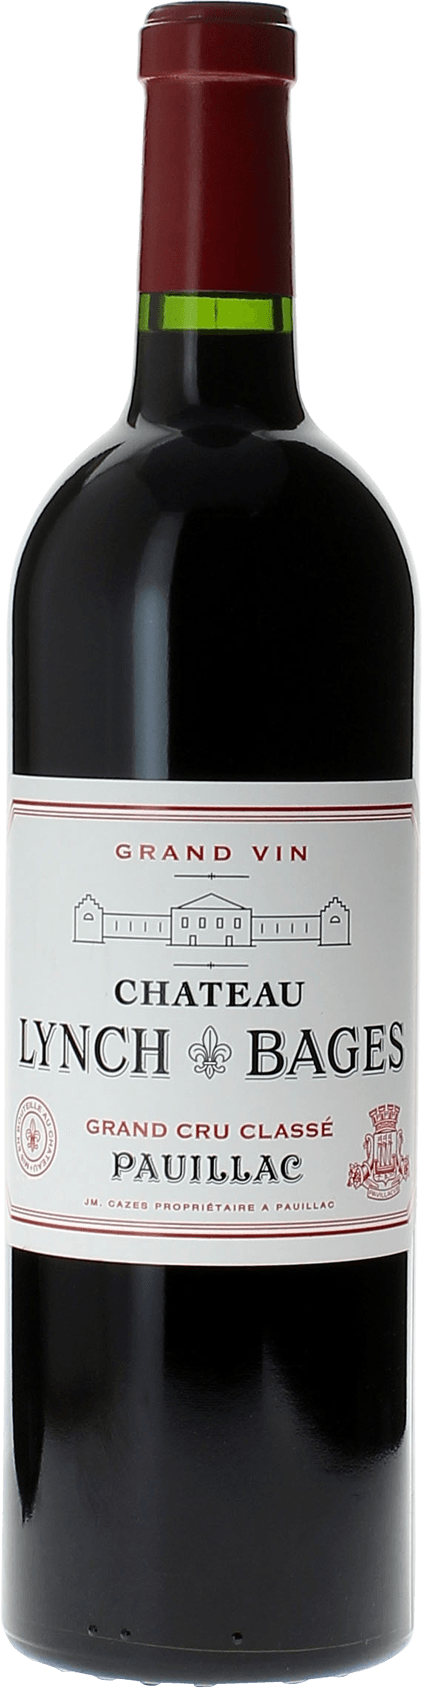 Lynch bages 1997 5 me Grand cru class Pauillac, Bordeaux rouge